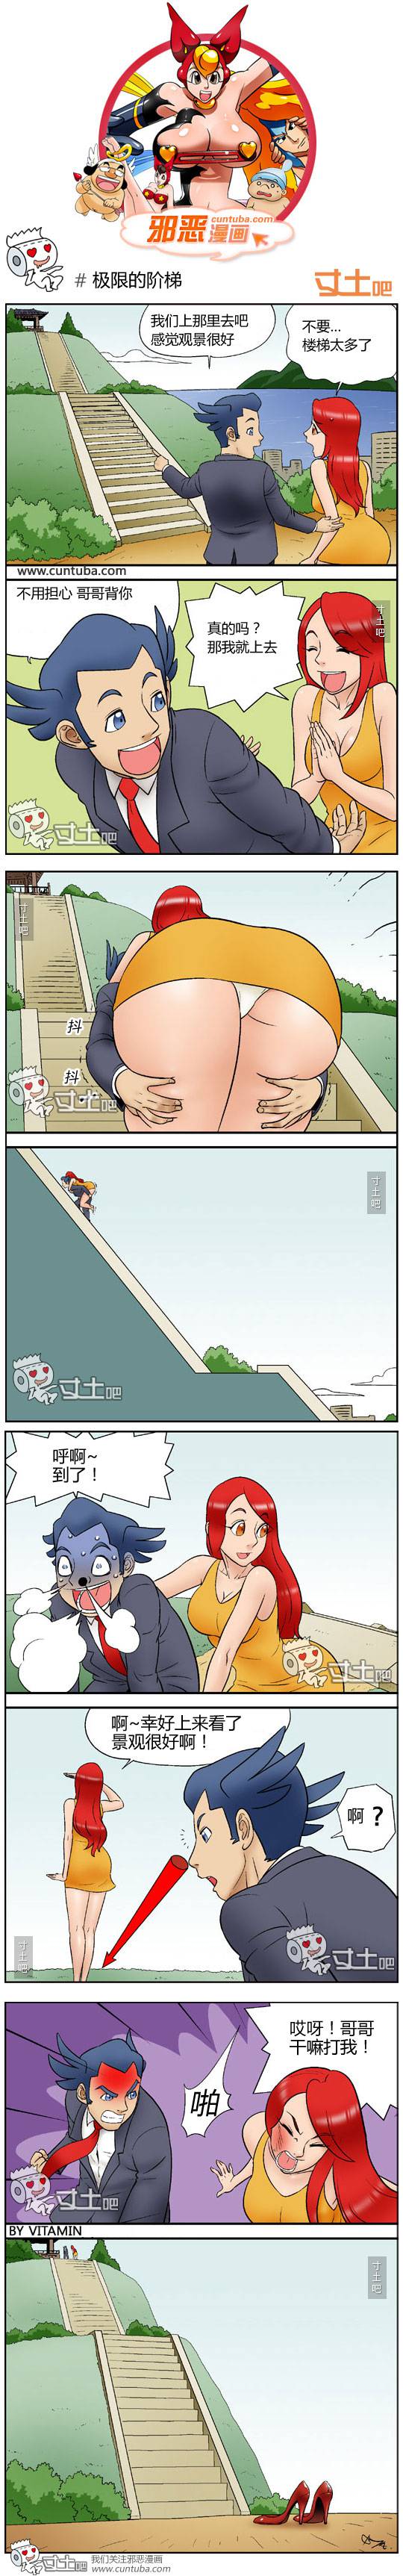 邪恶漫画爆笑囧图第117刊：欲望